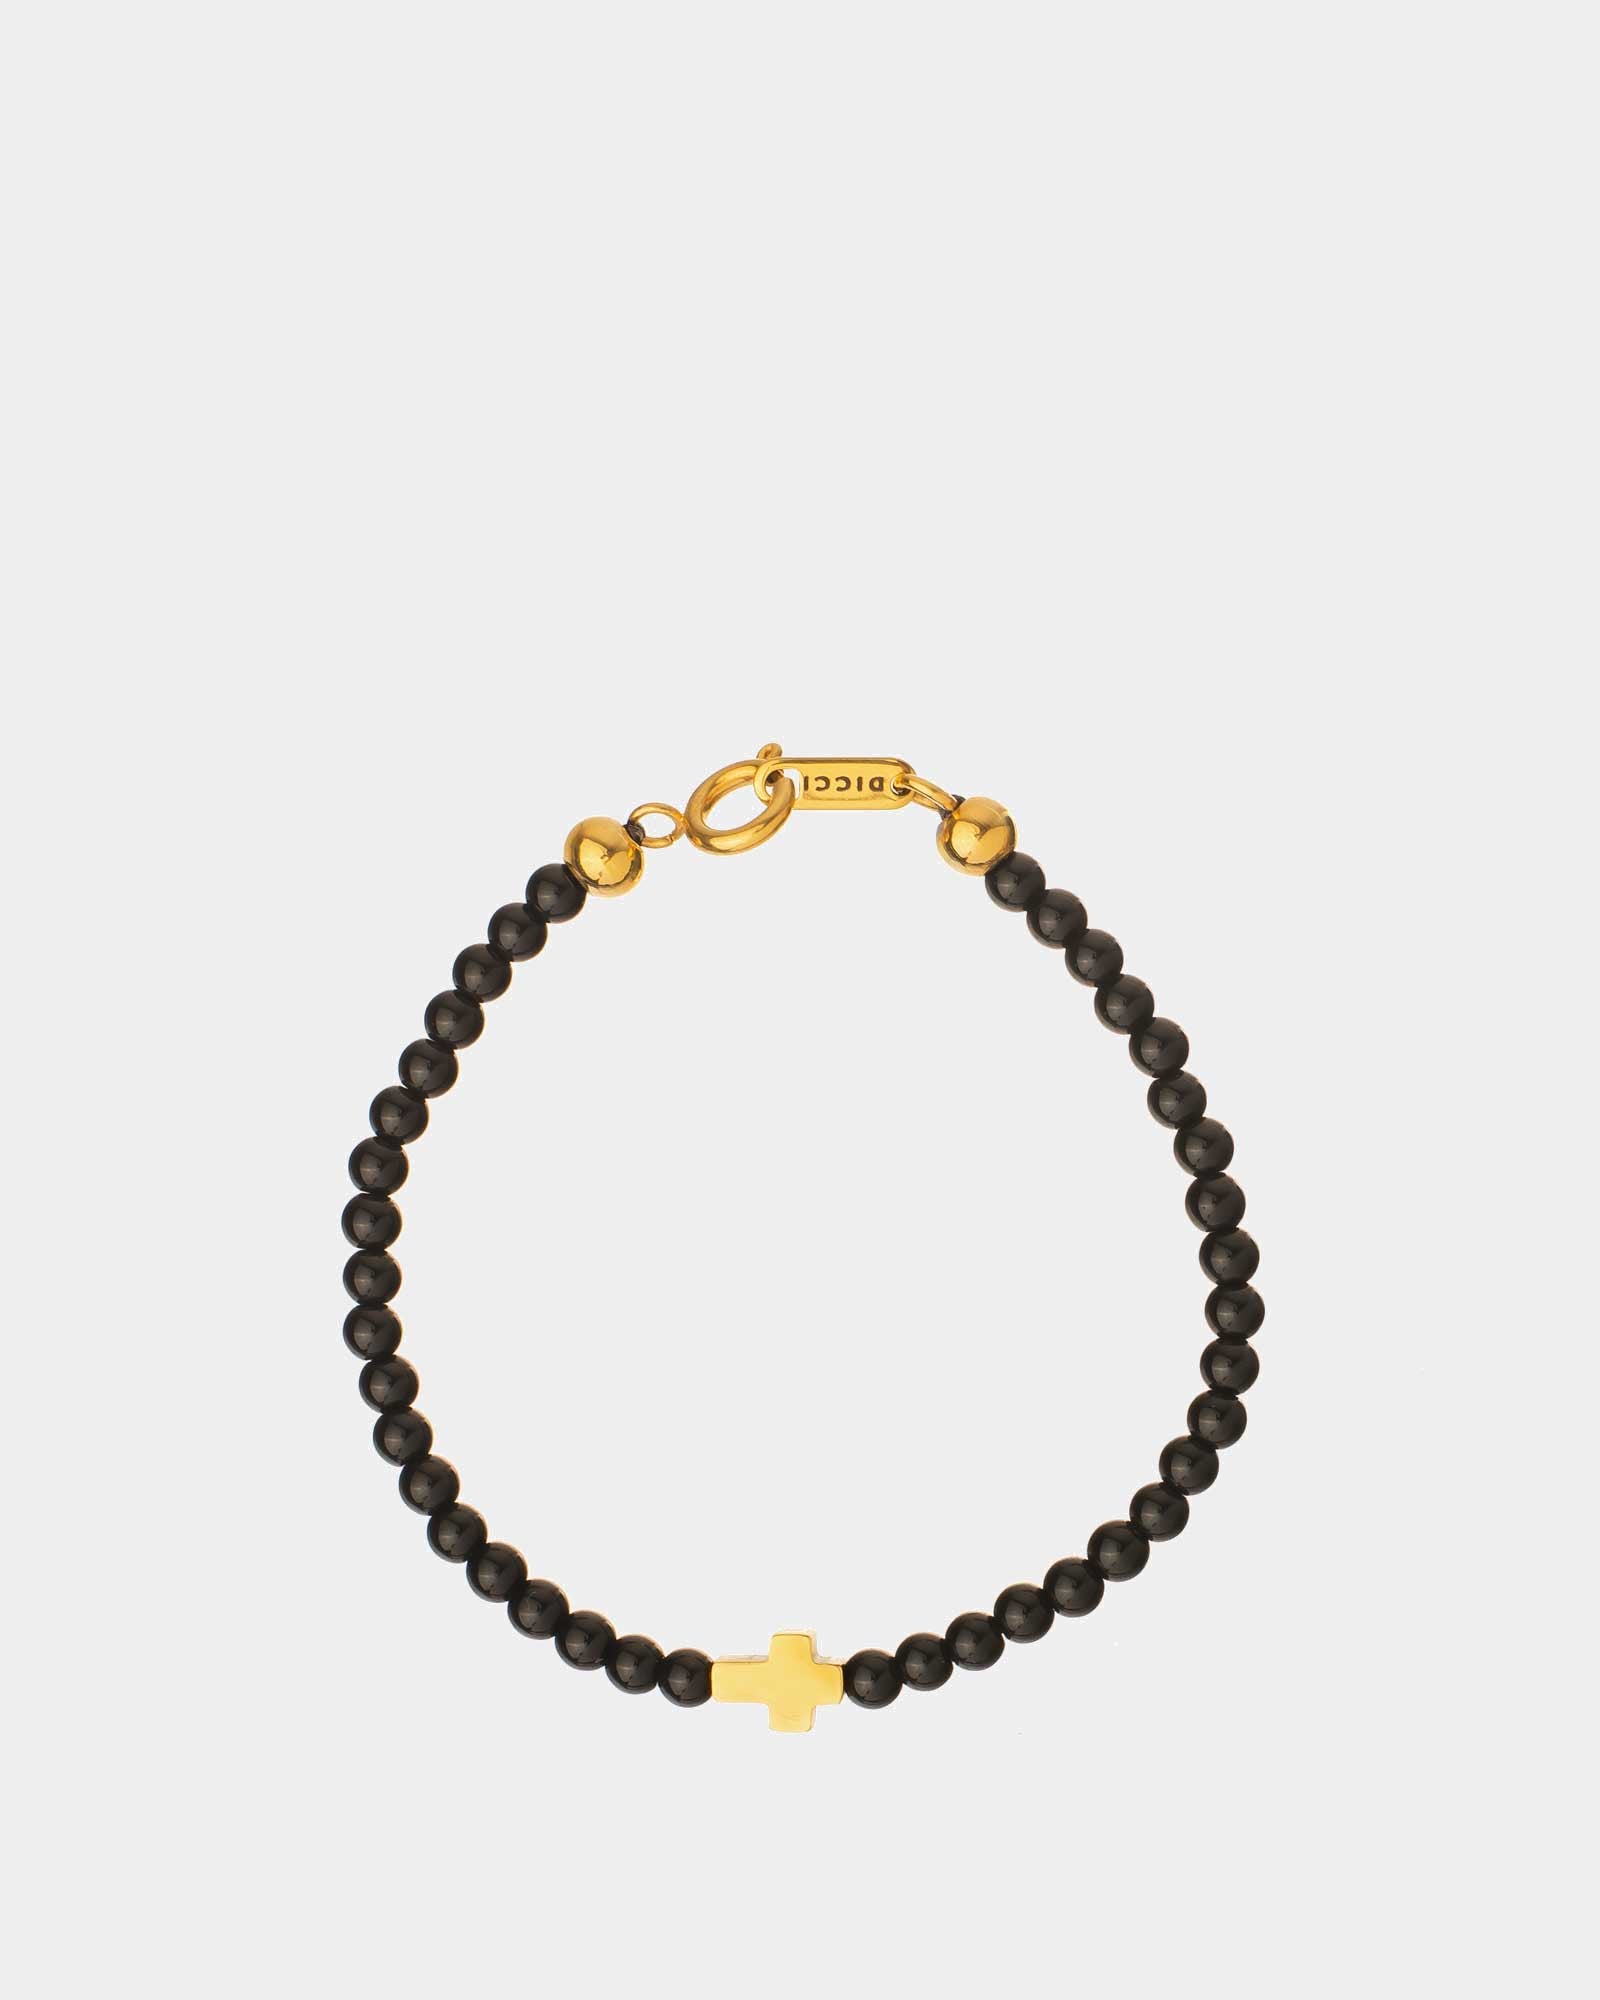 Cross - Black Onyx Stone Bracelet - Unissex Bracelet - Online Jewelry - Dicci